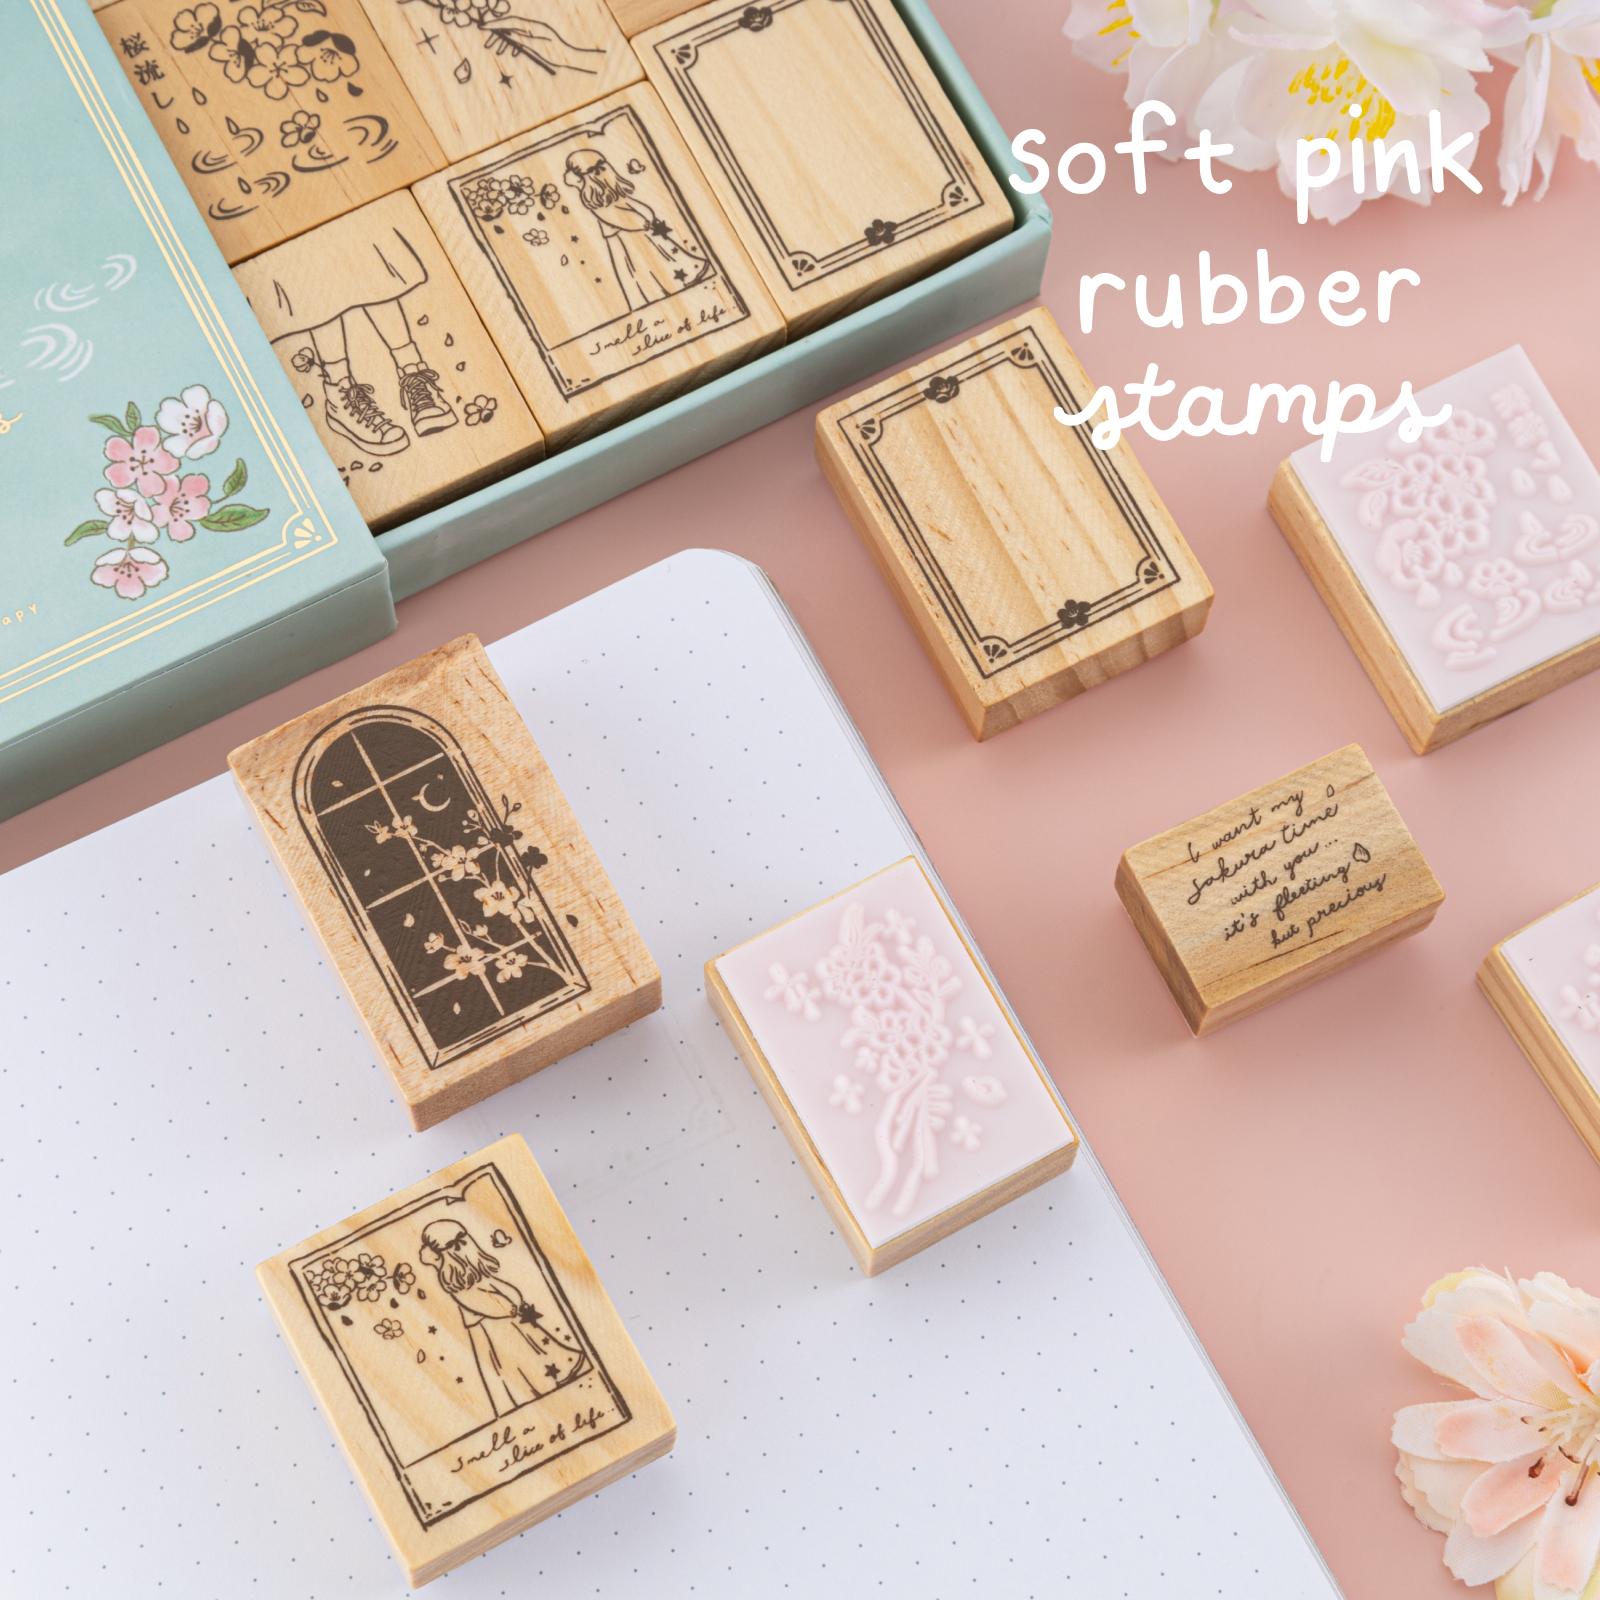 Tsuki ‘Sakura Days’ Bullet Journal Stamp Set ☾